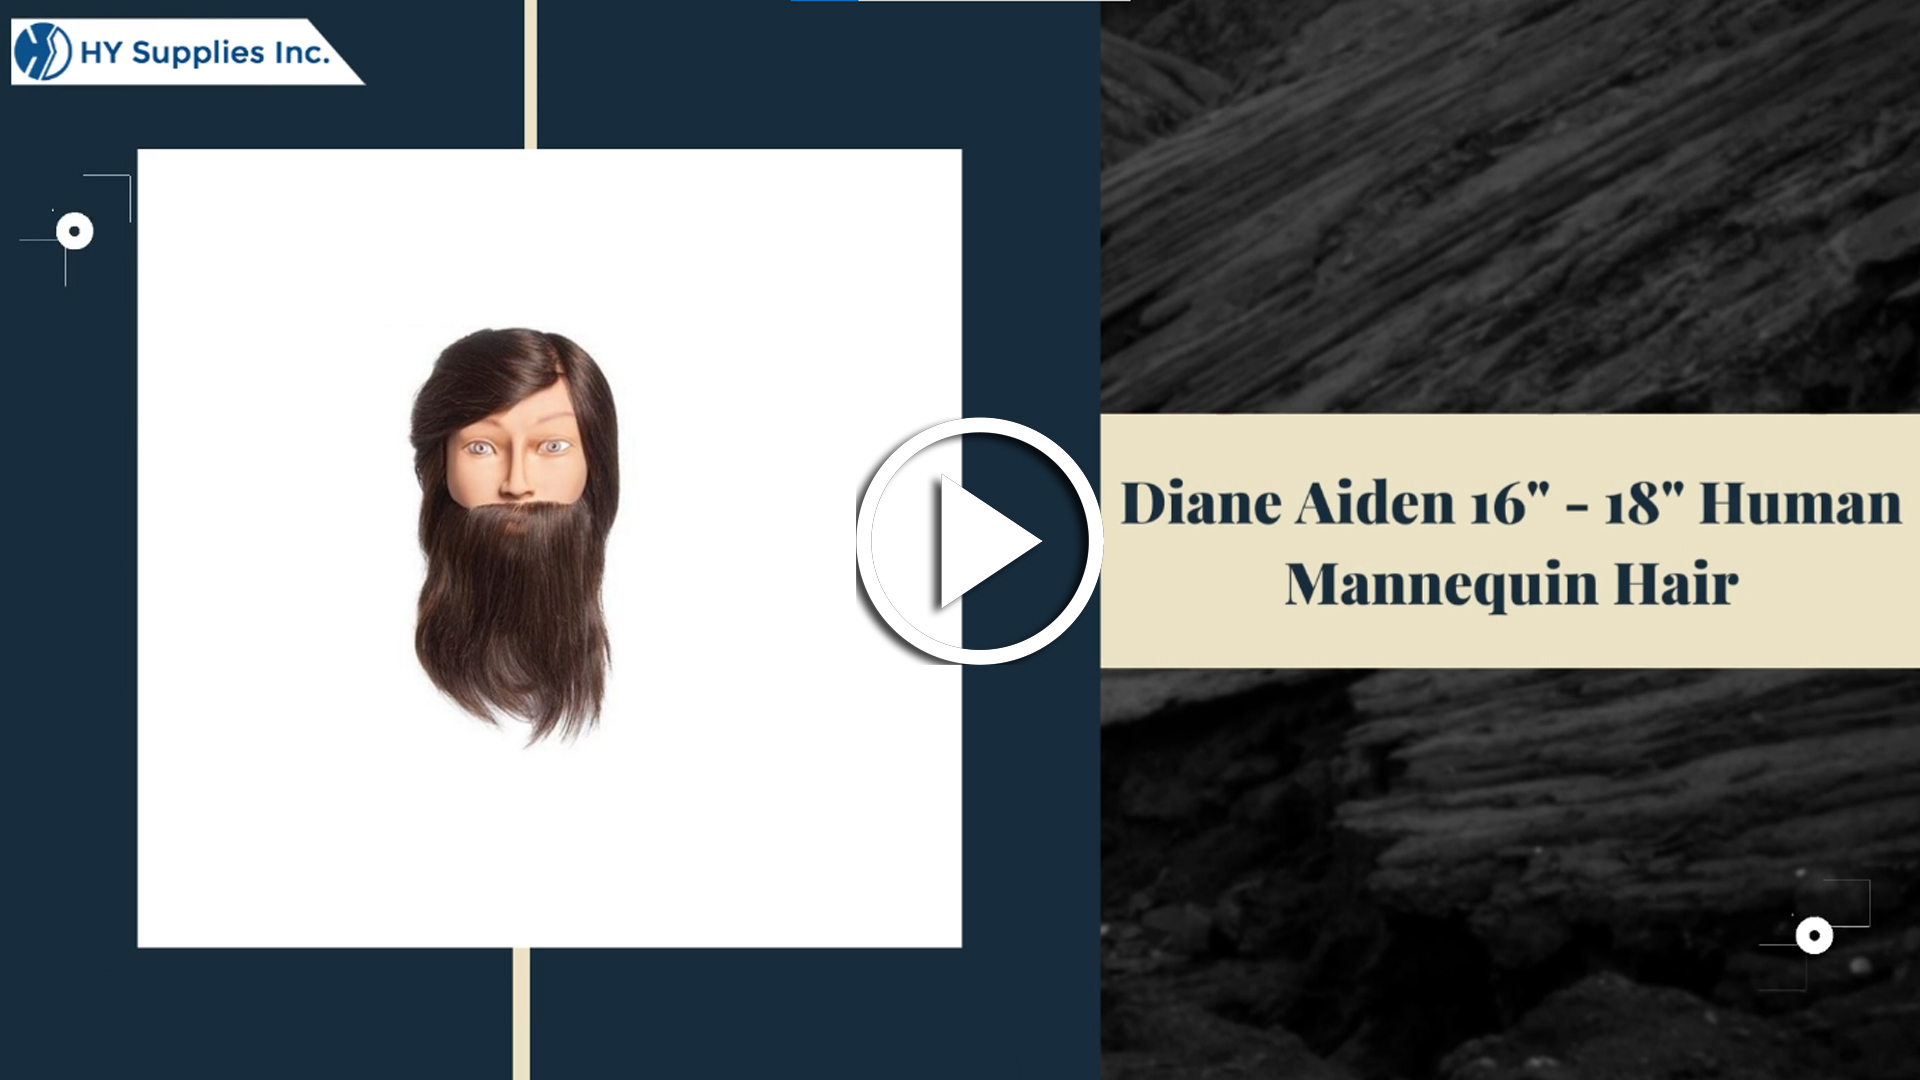 Diane Aiden 16" - 18"Human Mannequin Hair